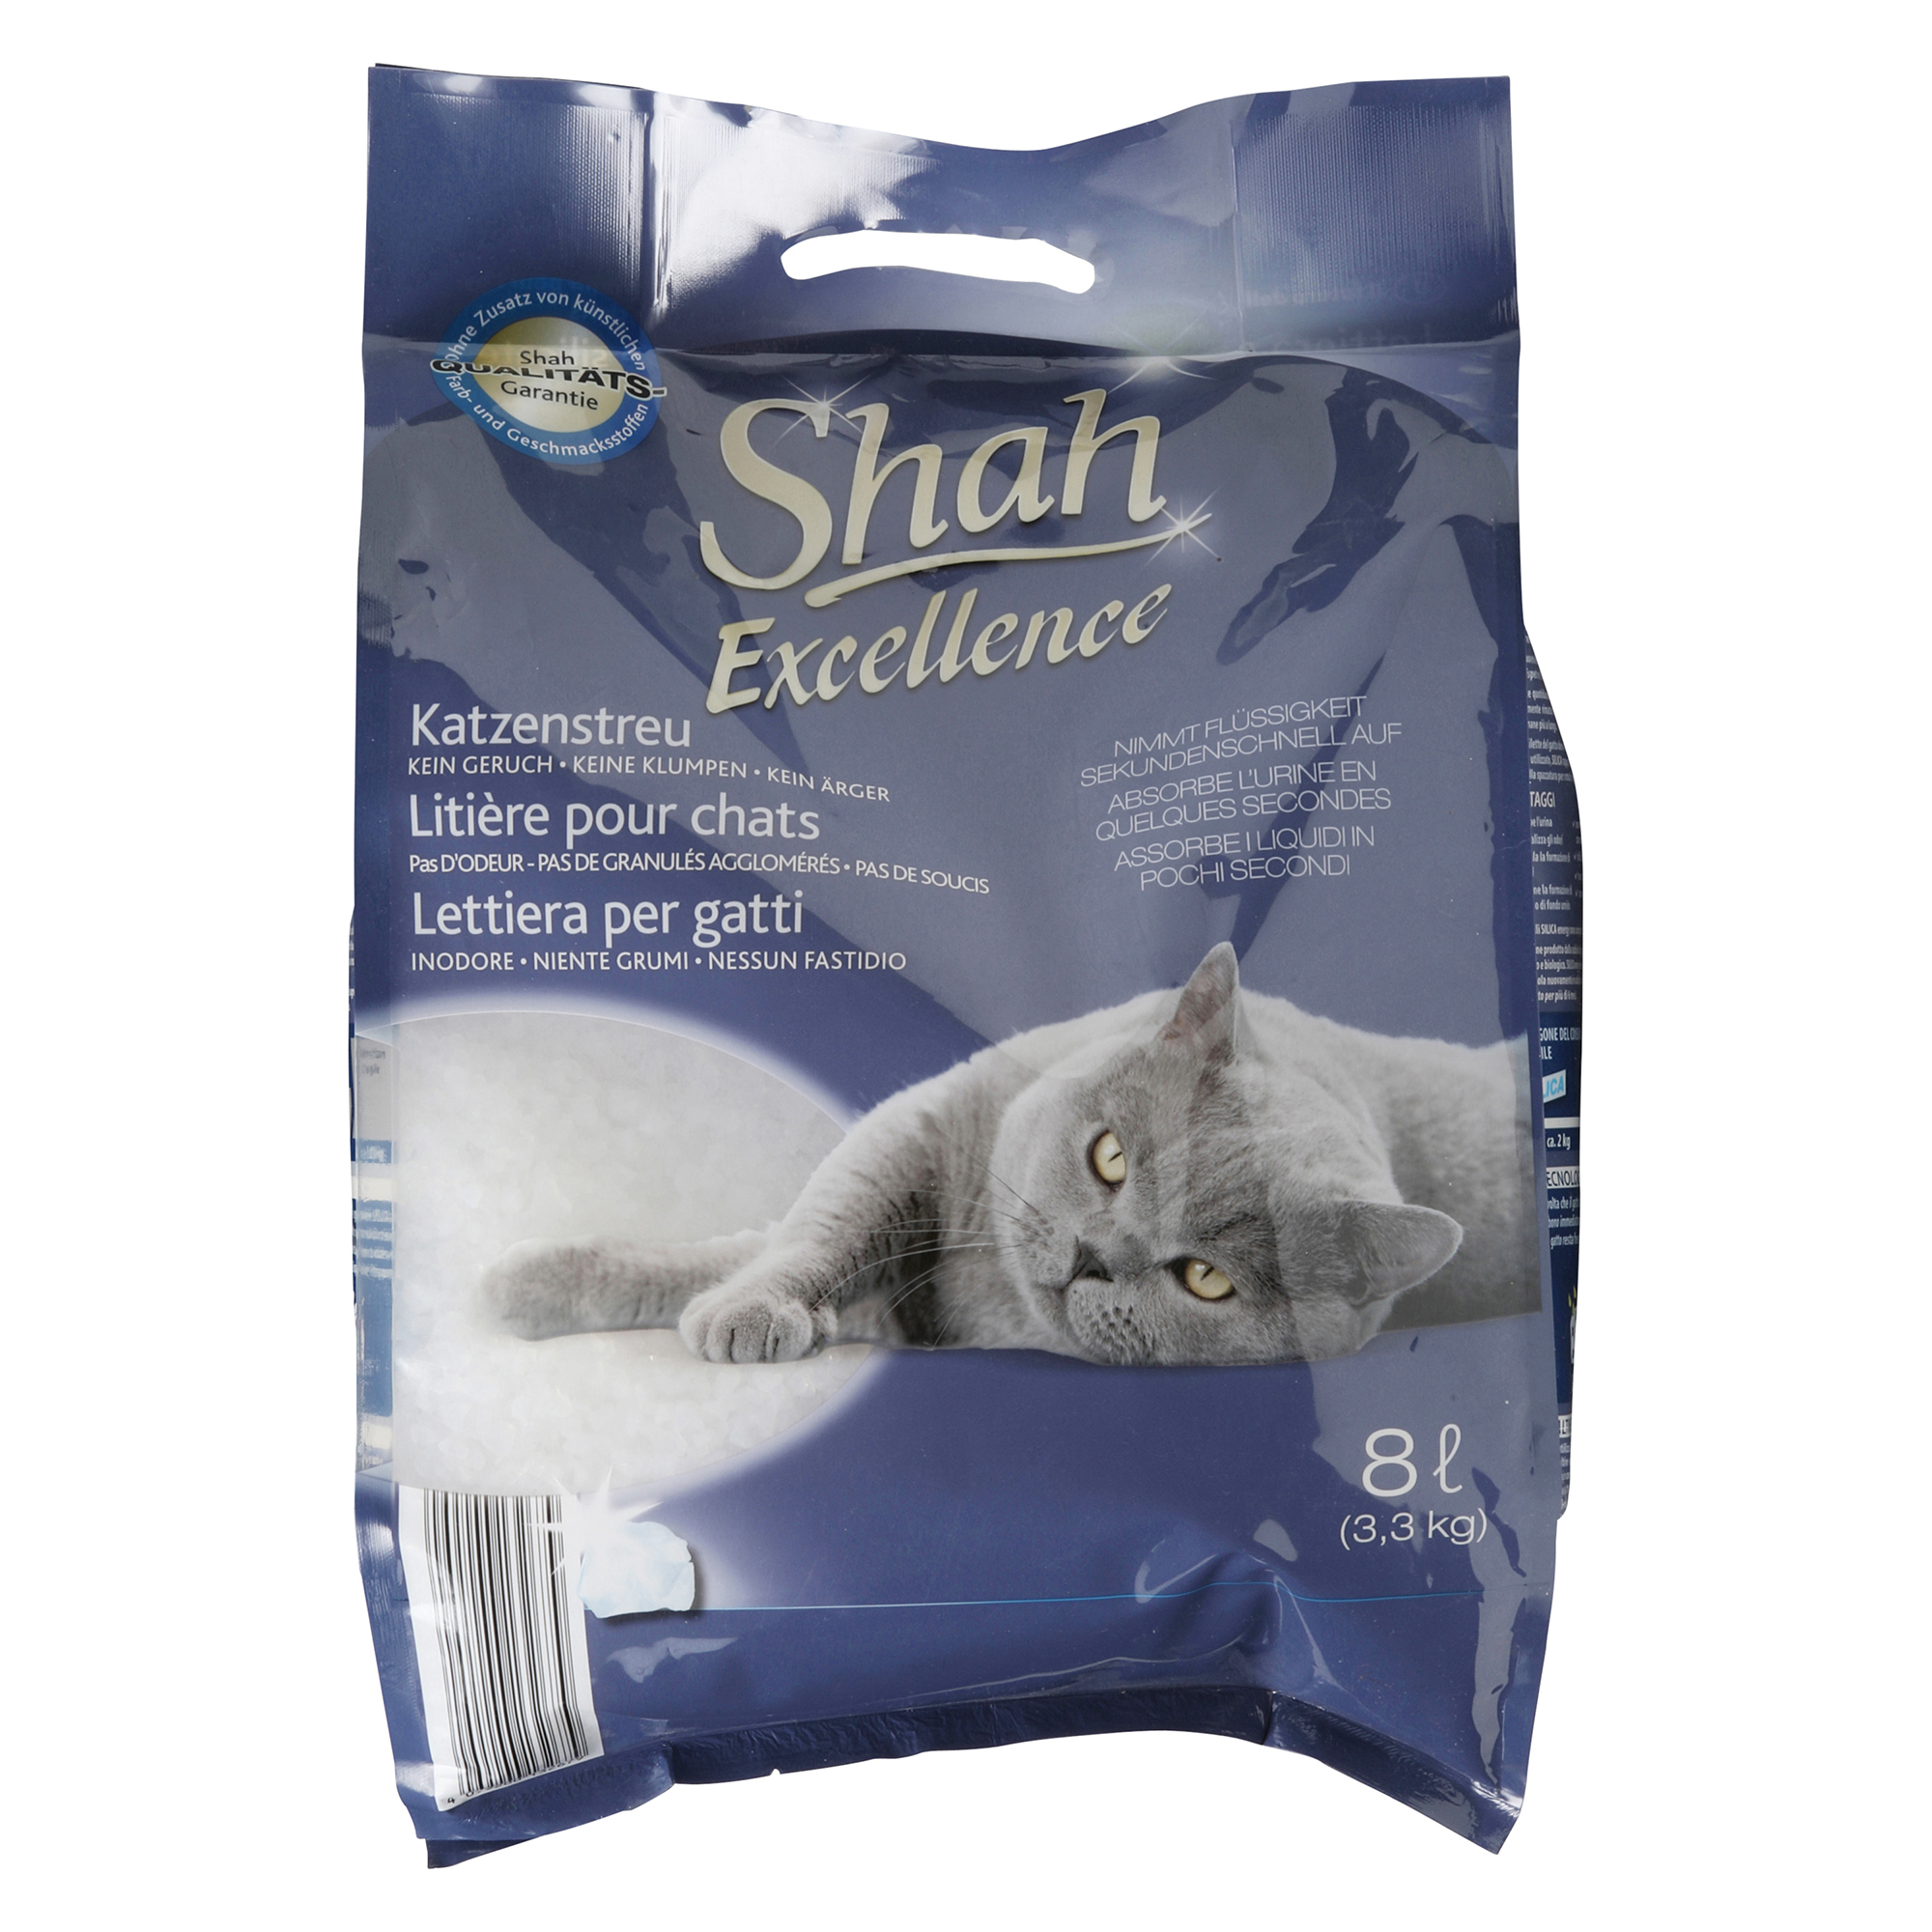 SHAH EXCELLENCE Lettiera premium per gatti, al silicio